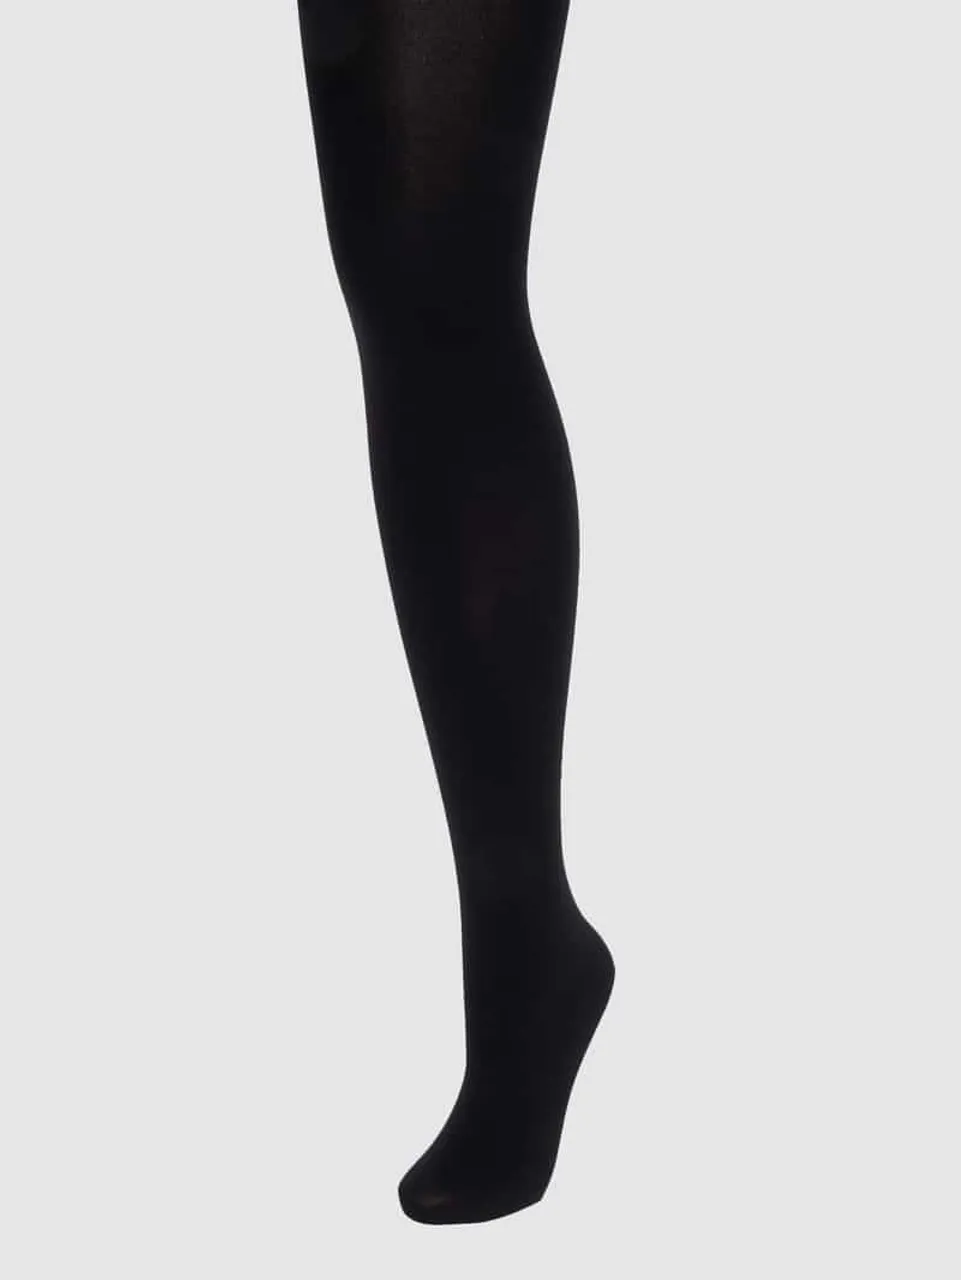 Falke Strumpfhose mit verstärkten Nähten Modell 'Cotton Touch' in Black